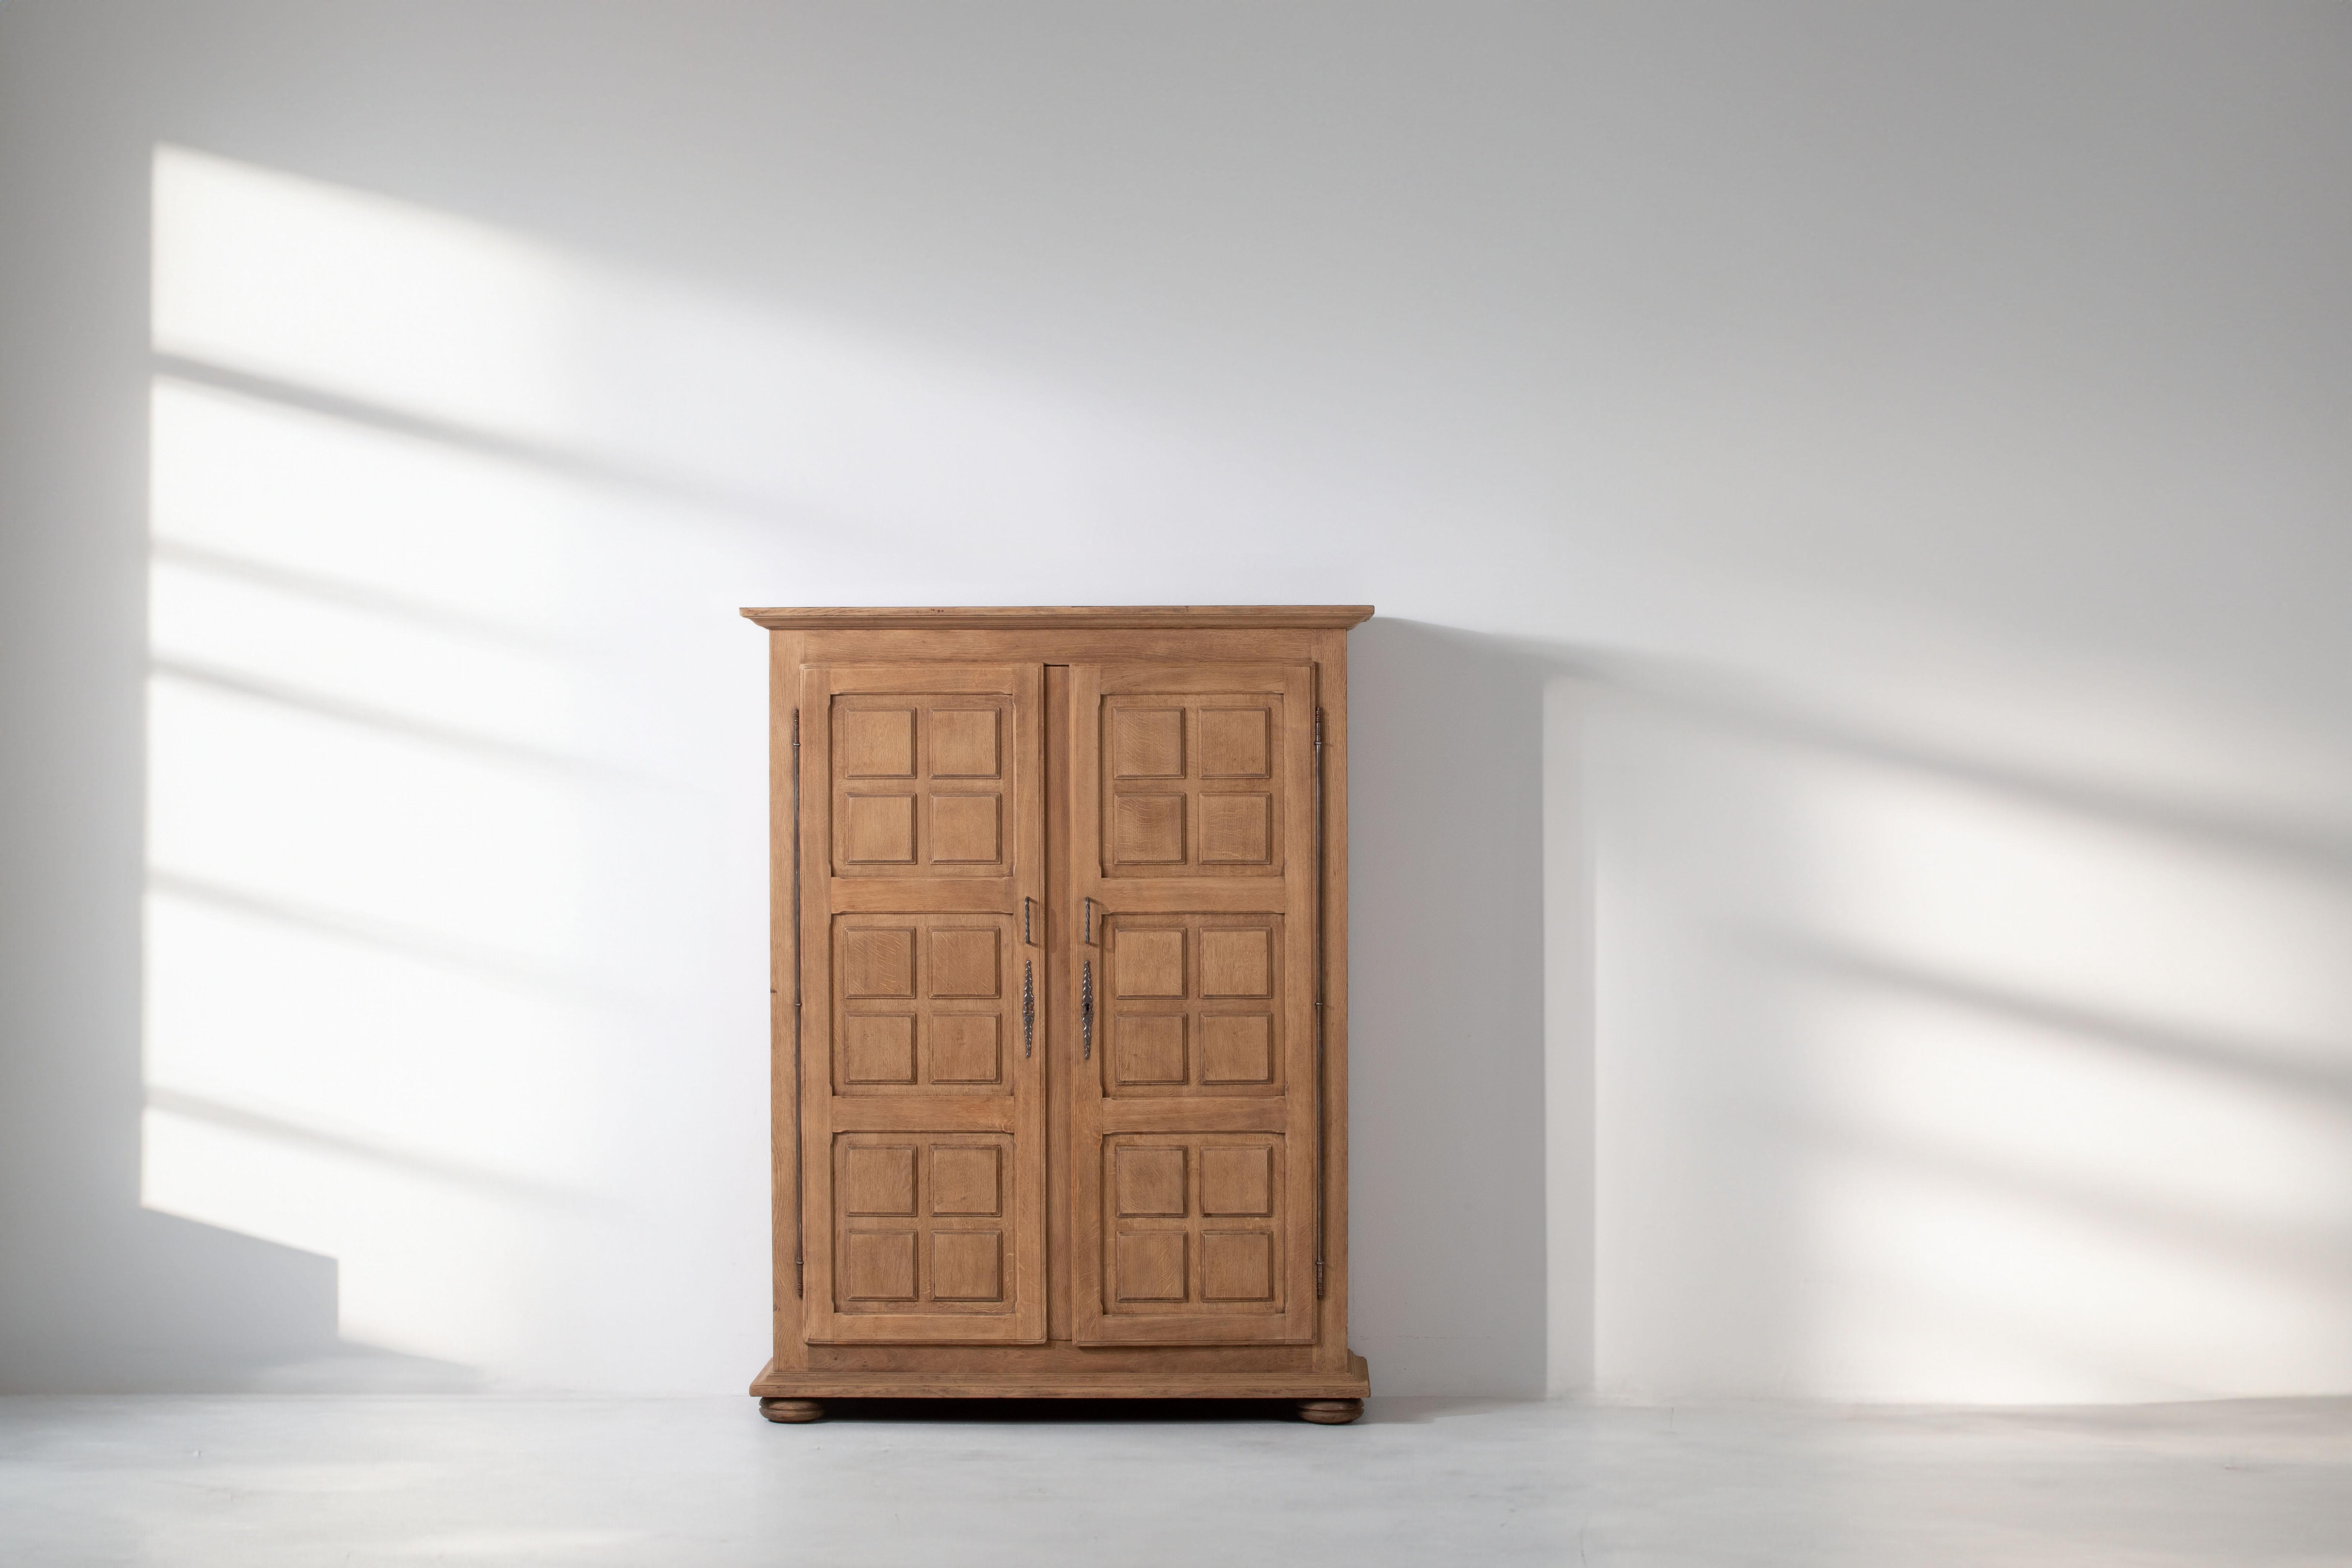 Der Schrank aus massiver Eiche aus den 1950er Jahren besticht durch sein ausgeprägtes quadratisches Muster auf den Türen, das von der kühnen Ästhetik des Brutalismus inspiriert ist. Die mit viel Liebe zum Detail gefertigte Garderobe versprüht einen